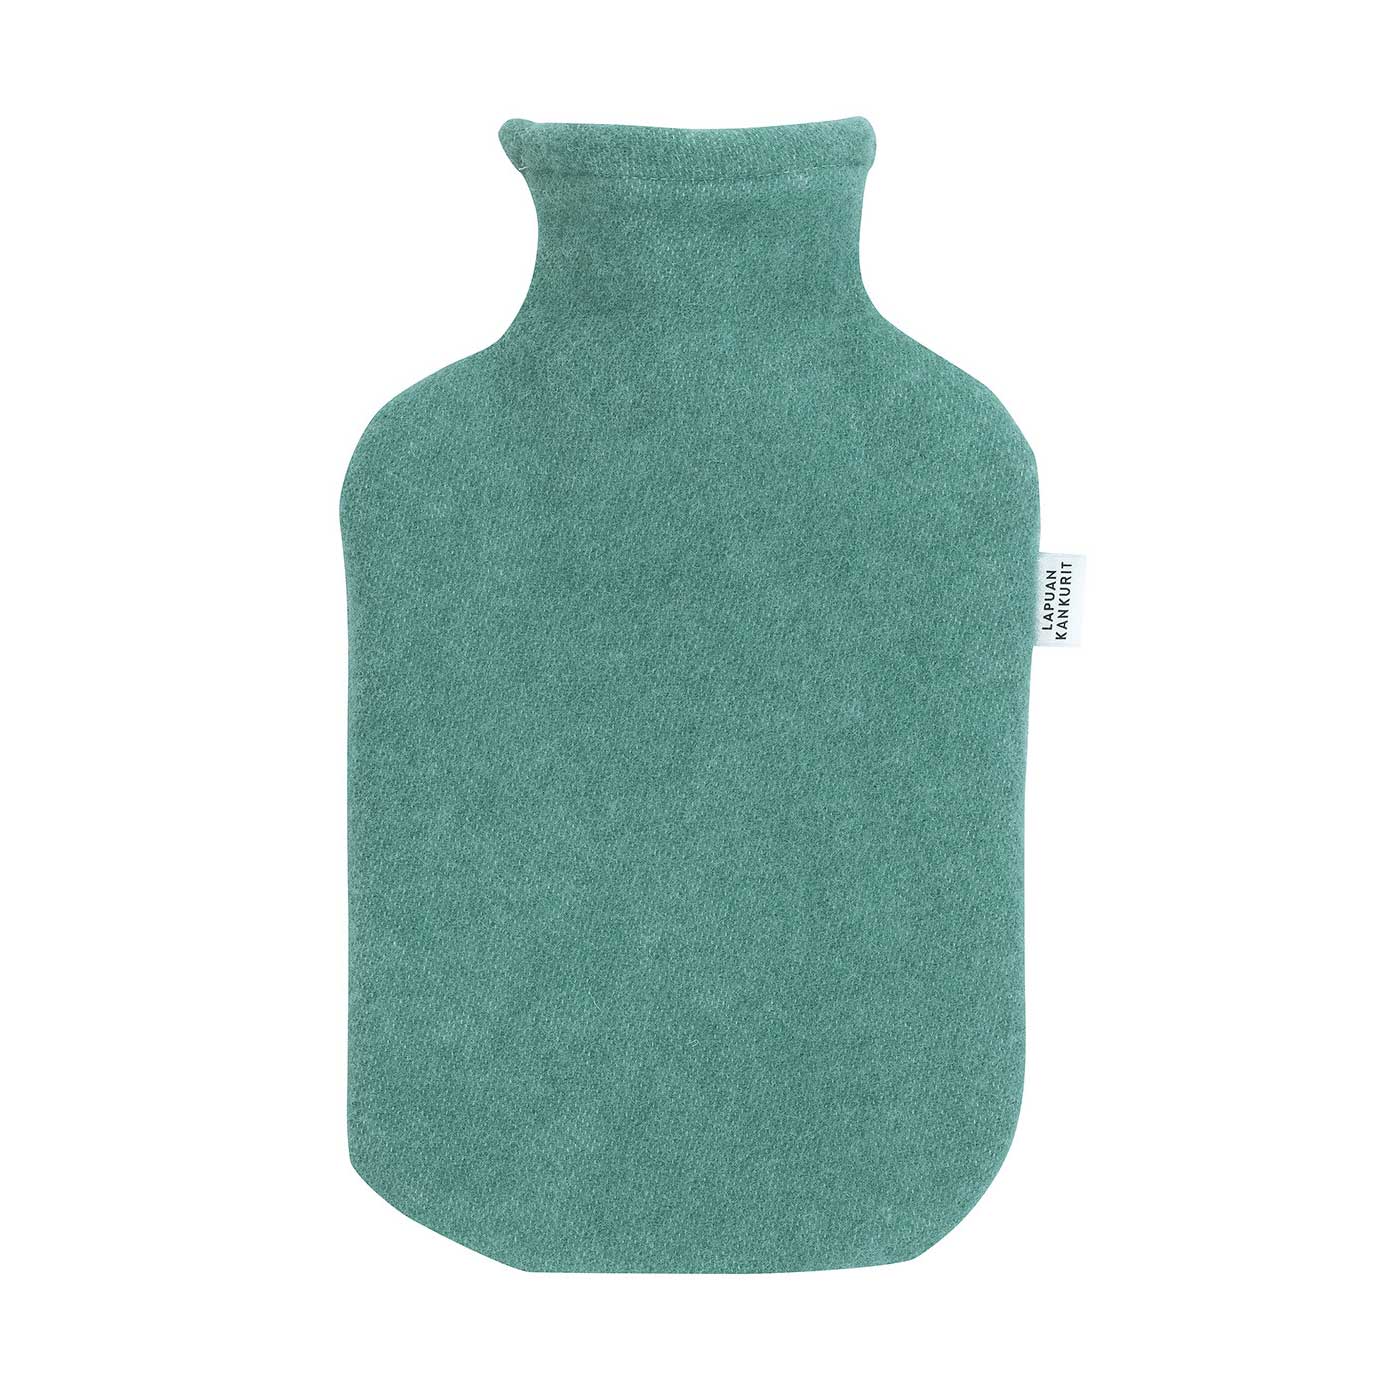 Lapuan Kankurit Wärmflasche TUPLA Farbe: green, 100 % Wolle aus Finnland   